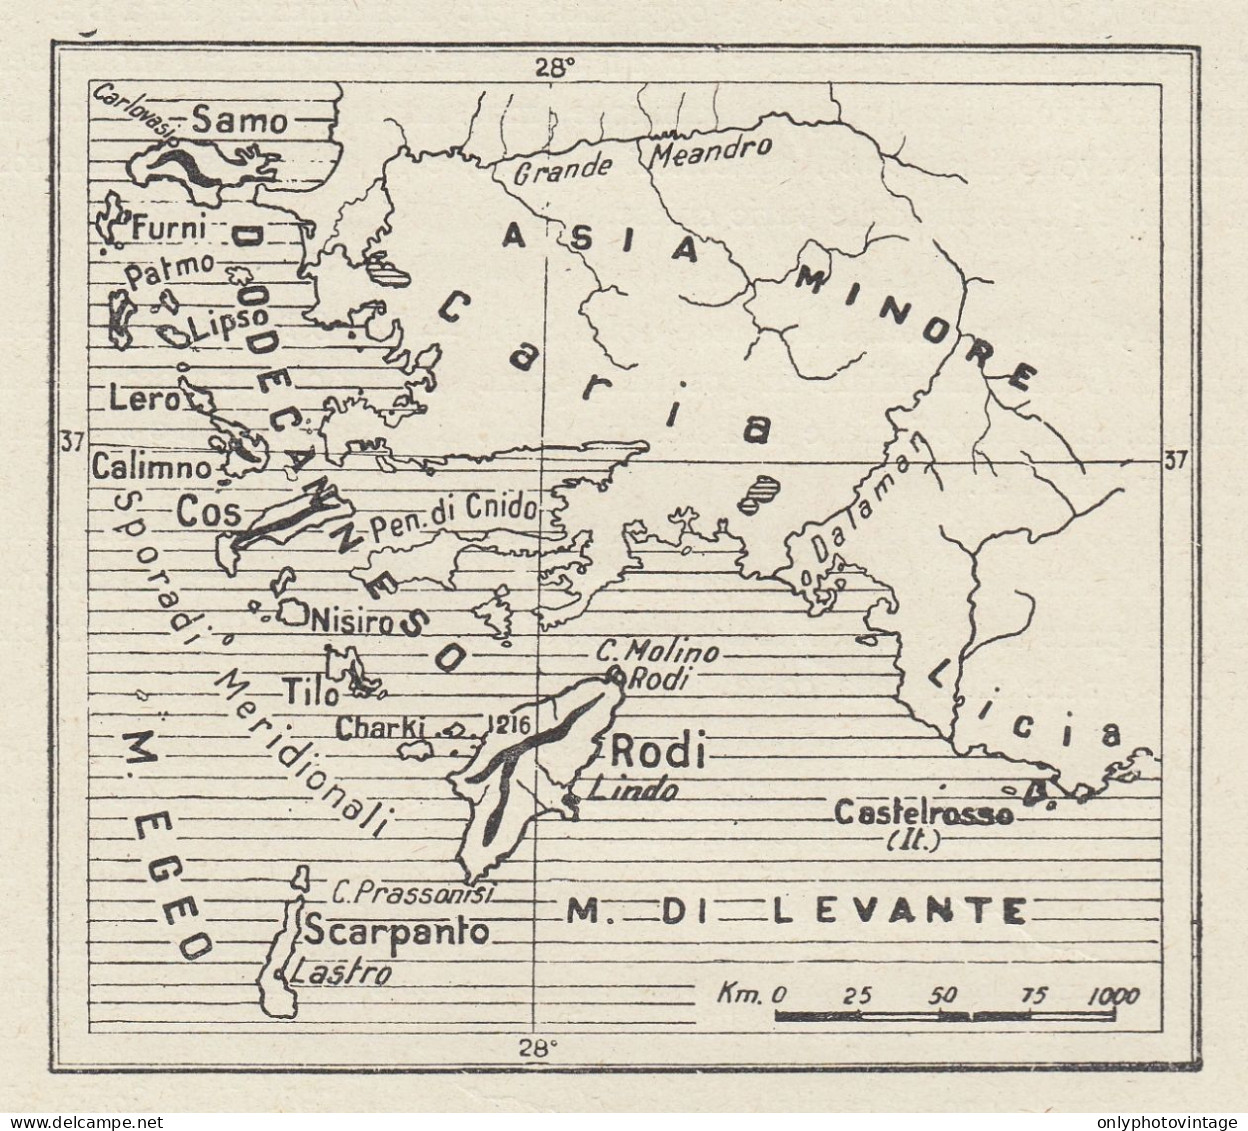 Le Isole Egee Italiane - Mappa D'epoca - 1936 Vintage Map - Cartes Géographiques